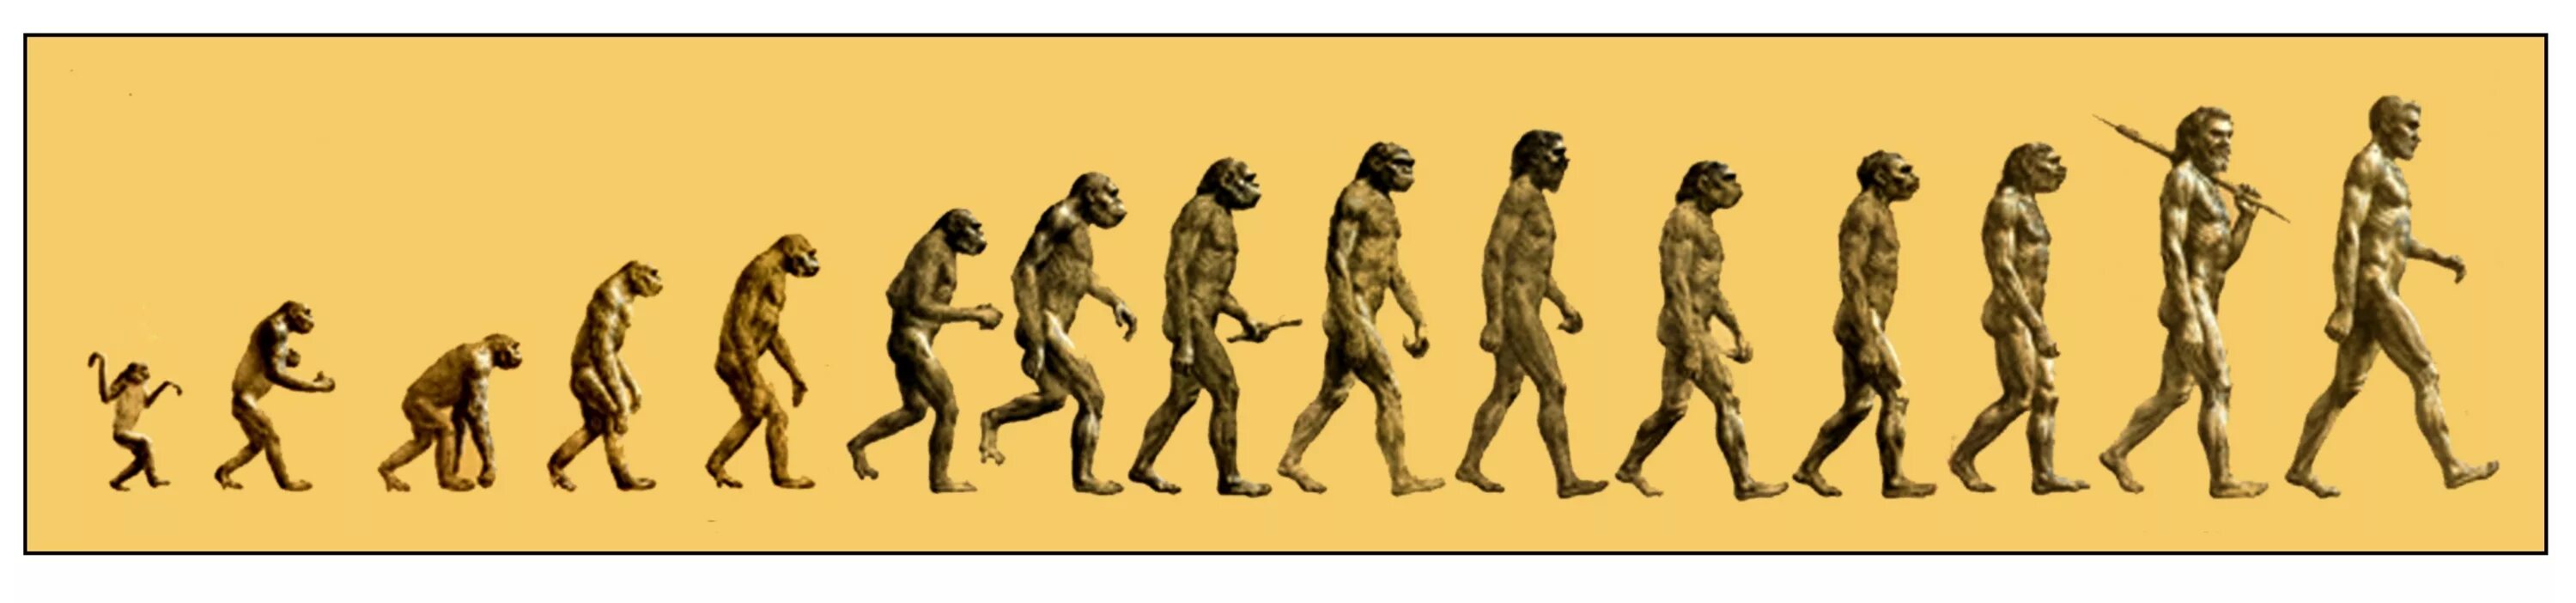 Развитие прогресс эволюция. Эволюция человека хомо сапиенс. Австралопитек неандерталец хомо сапиенс. Этапы эволюции человека,хомо сапиенс. Этапы эволюции хомо сапиенс.